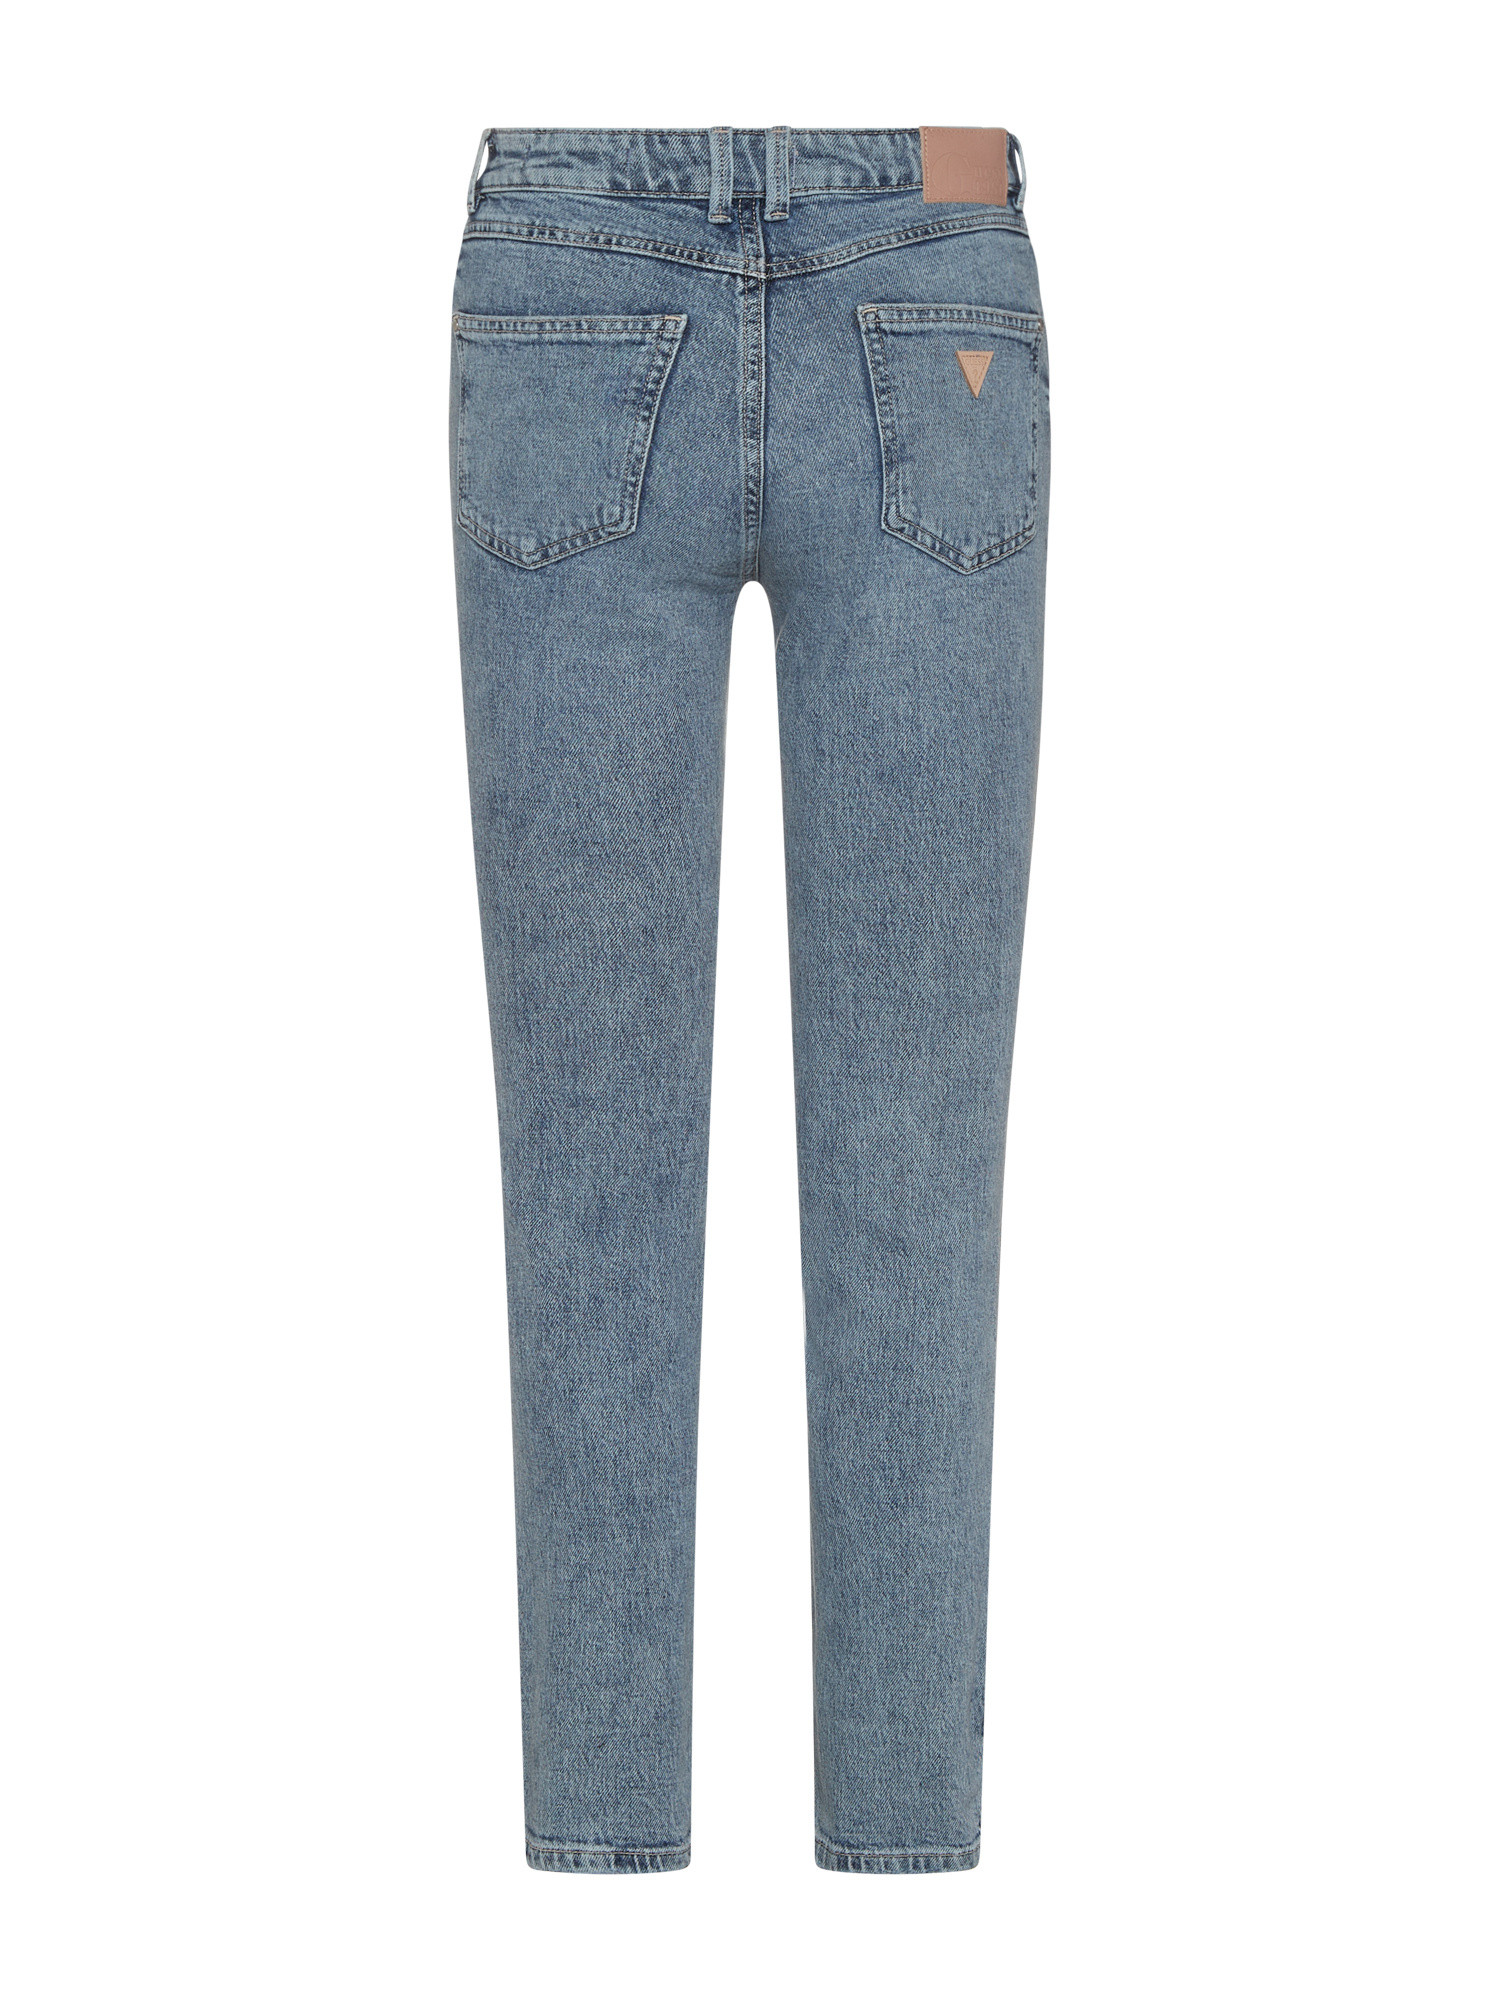 Guess - Five pocket skinny jeans, Light Blue, large image number 1